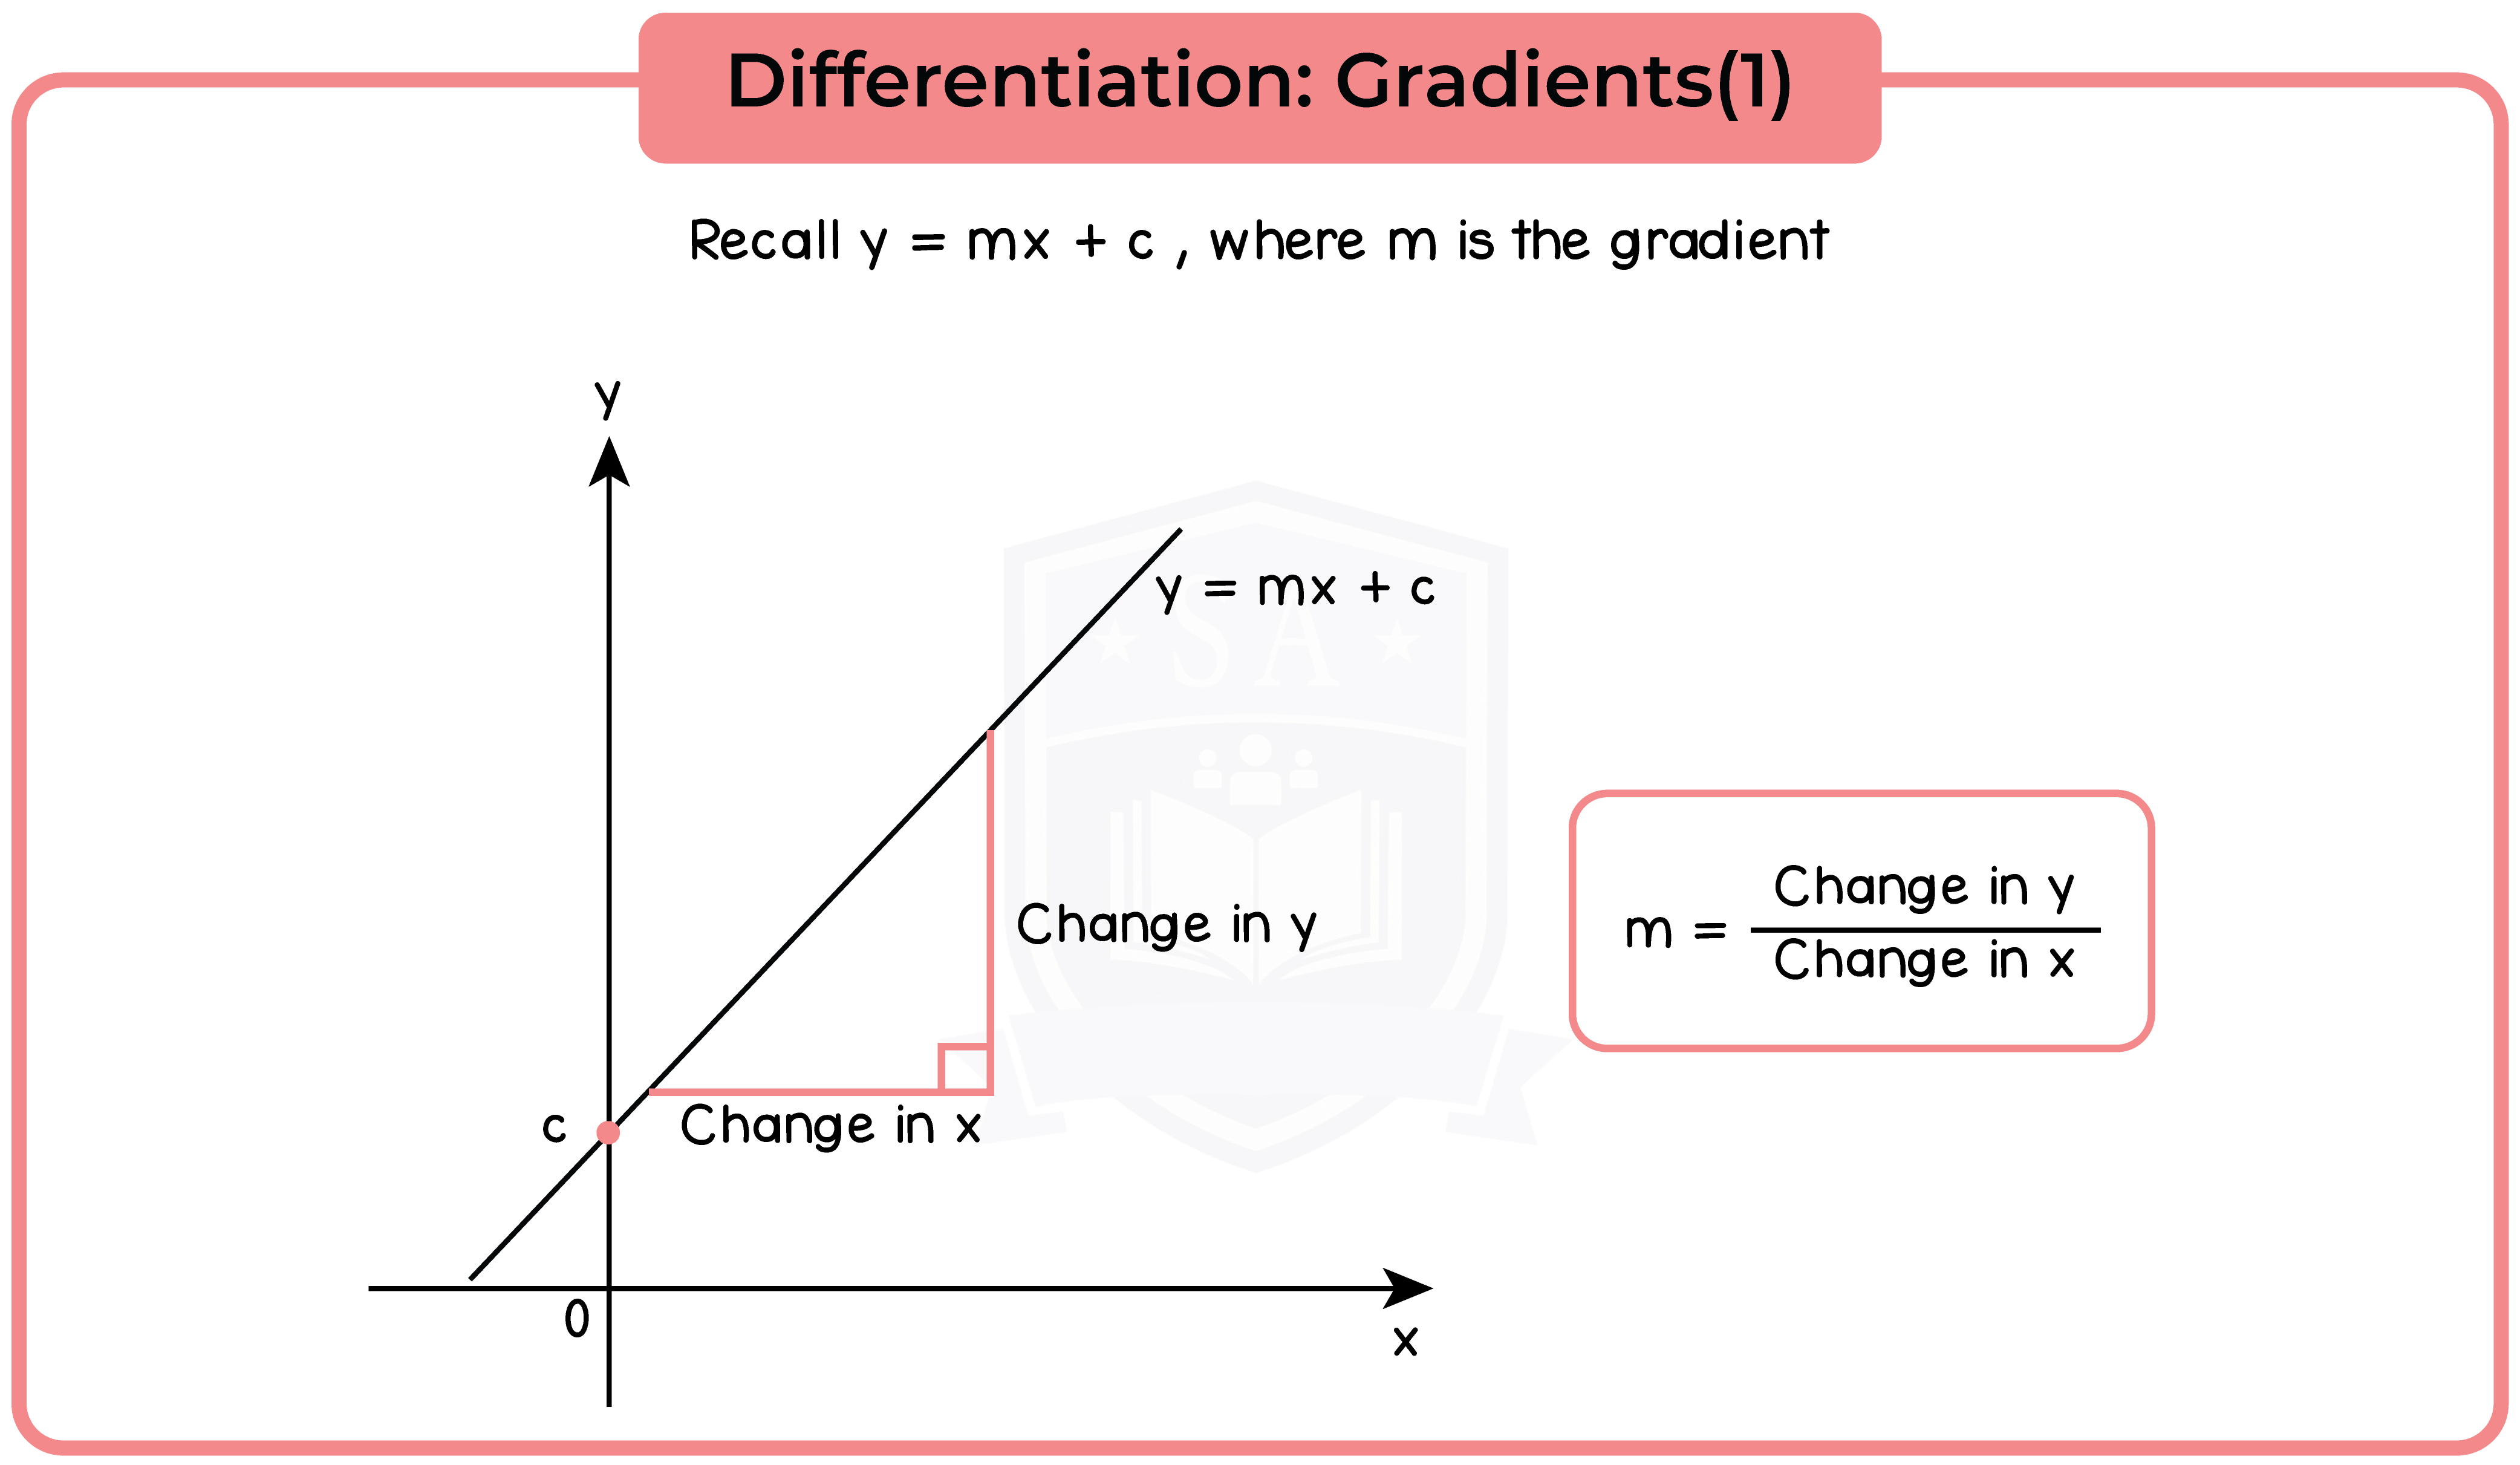 edexcel_igcse_mathematics a_topic 24_calculus_004_Differentiation: Gradients(1)